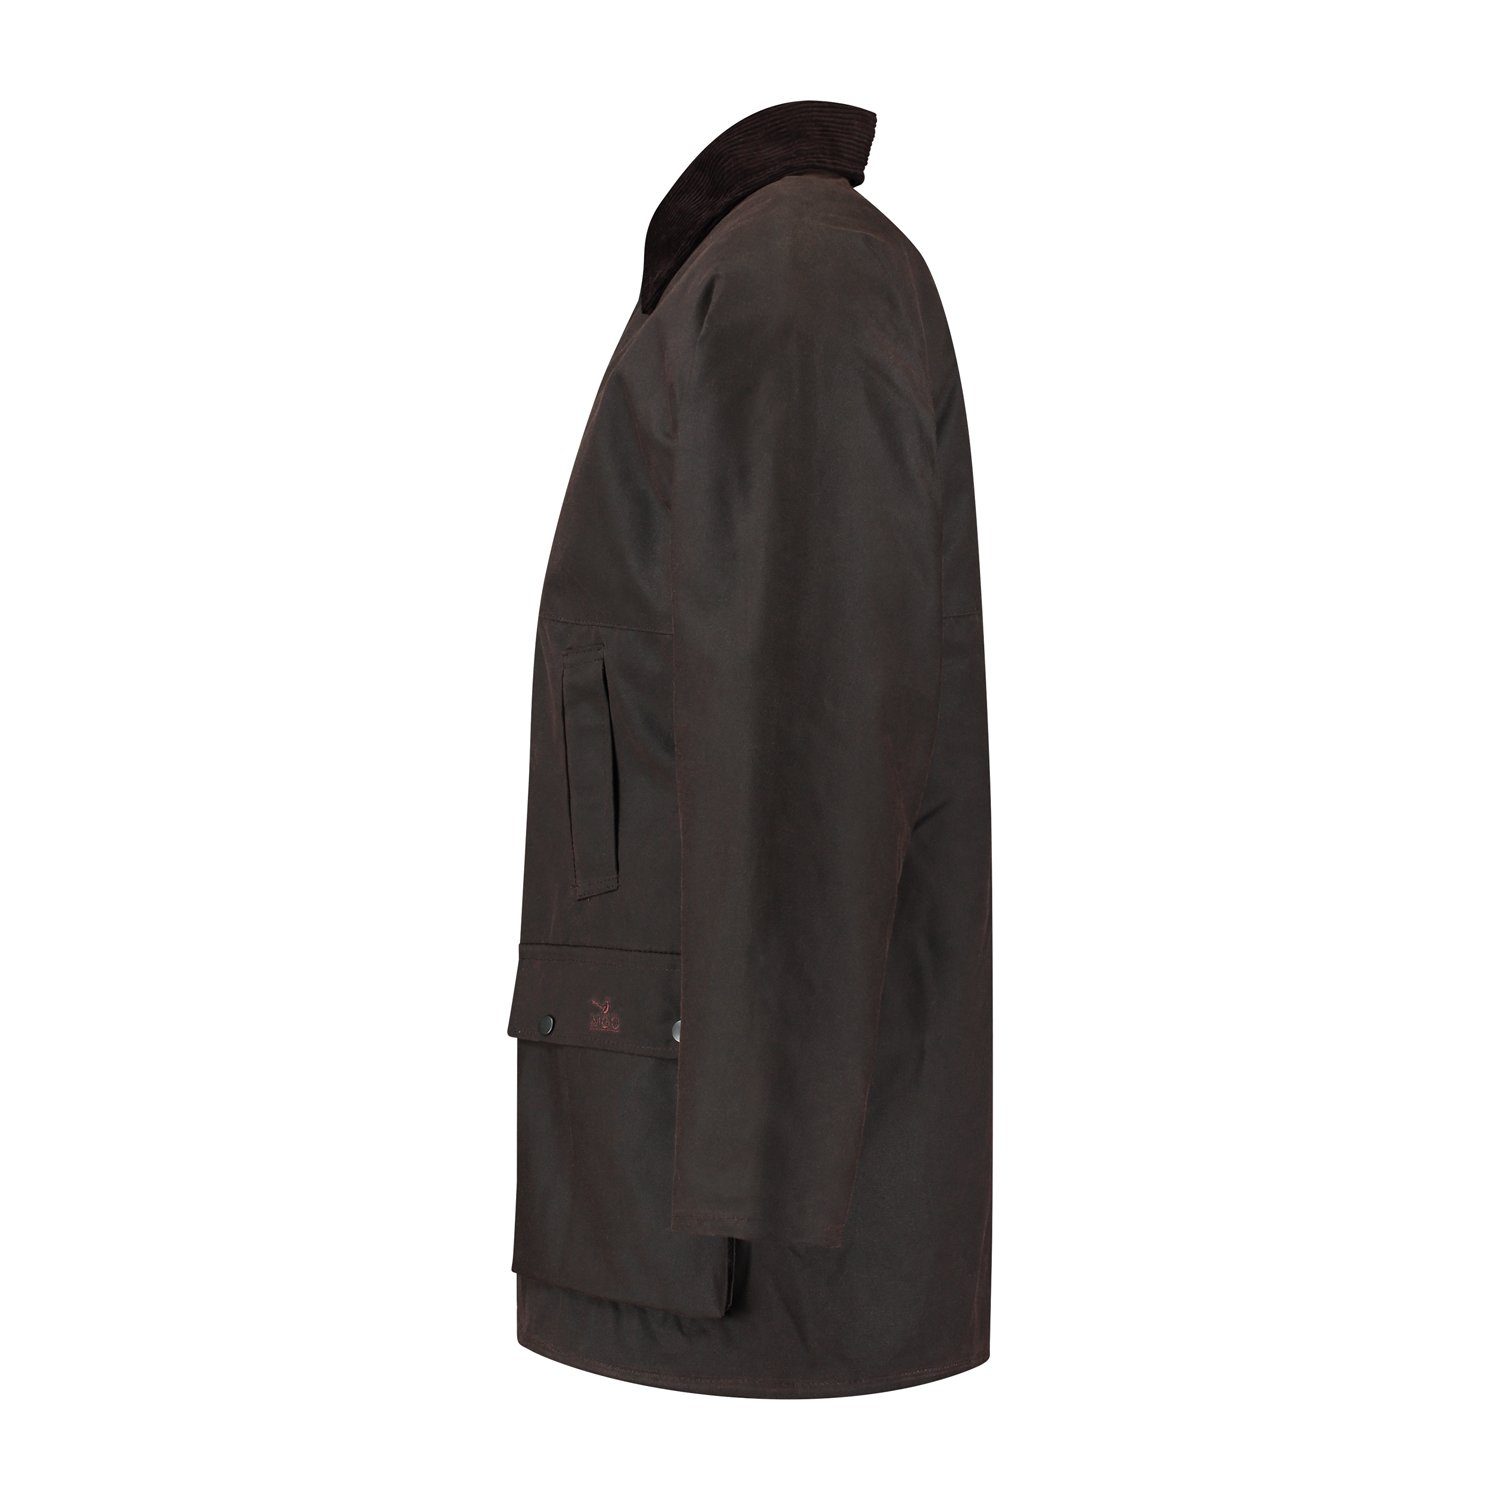 MGO Outdoorjacke British Wax Braun Jacket und winddicht wasserabweisend